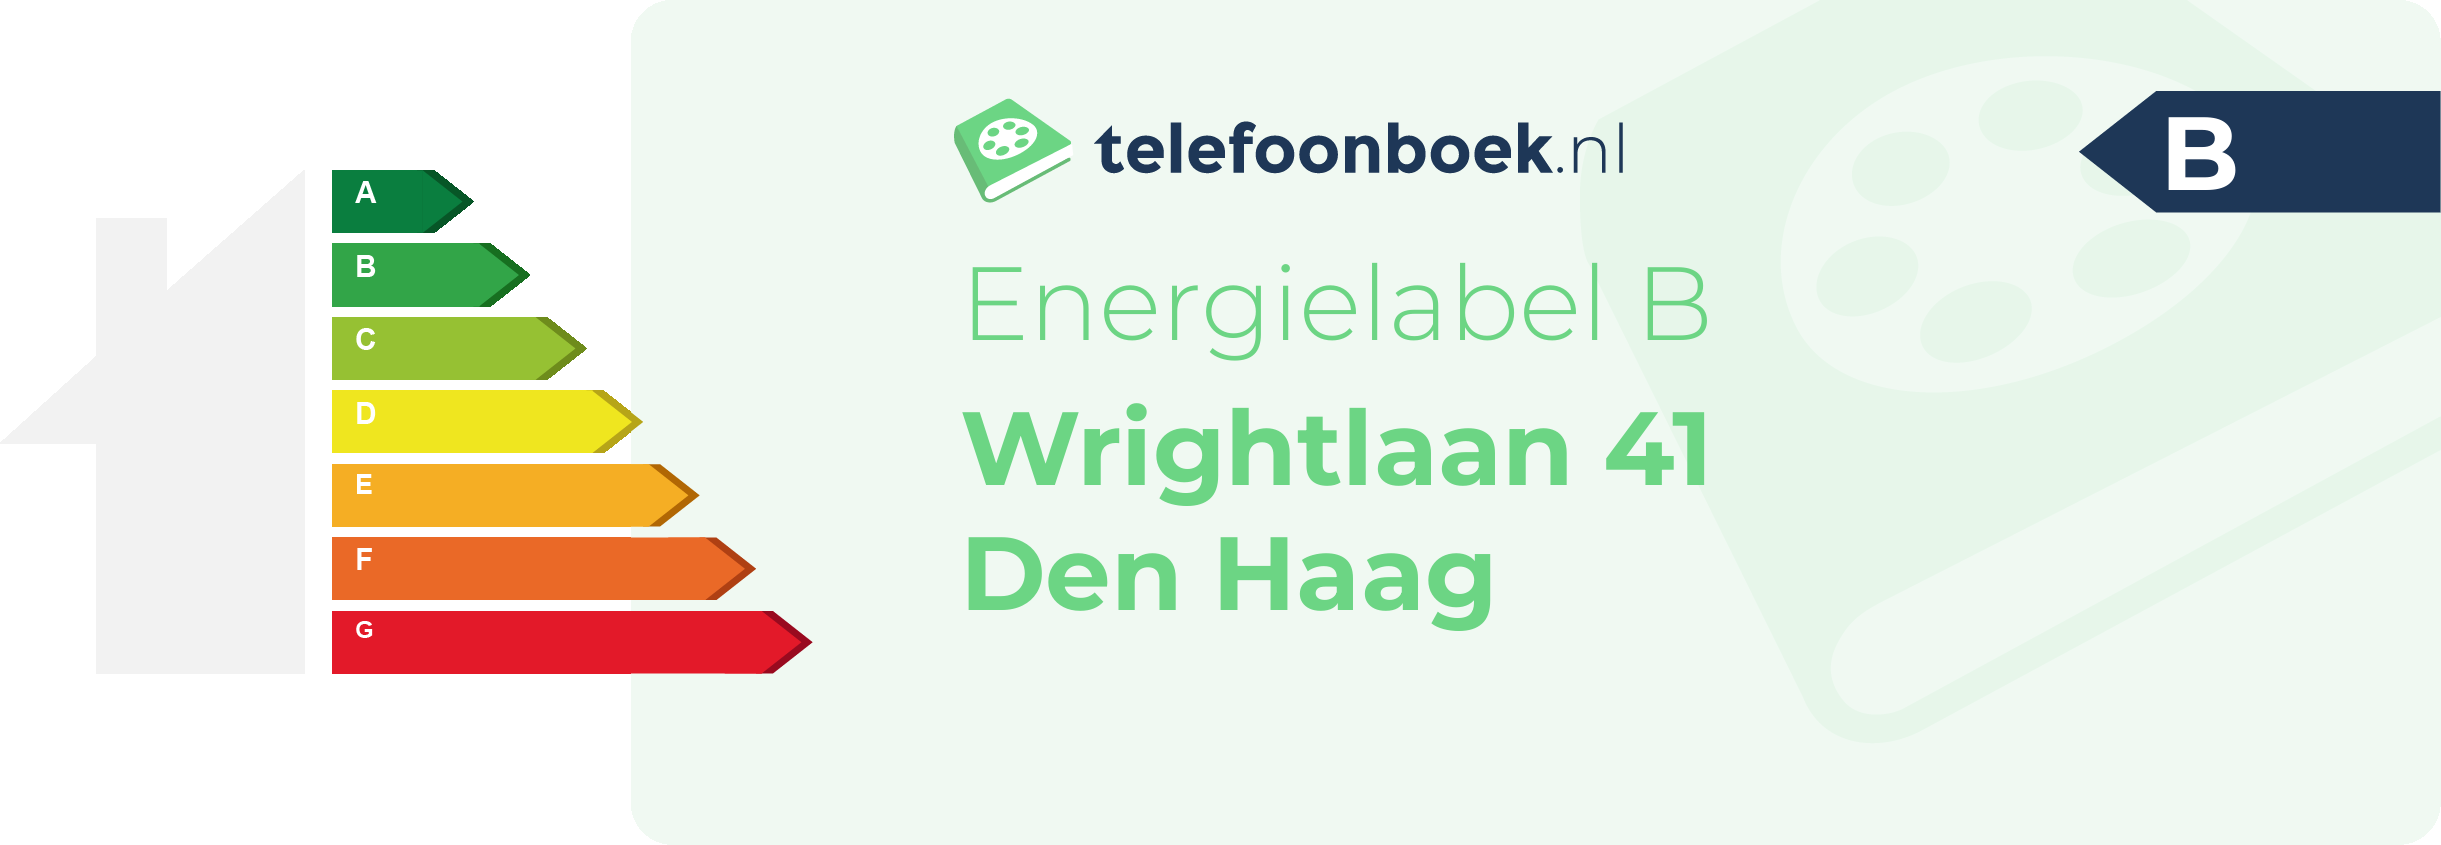 Energielabel Wrightlaan 41 Den Haag